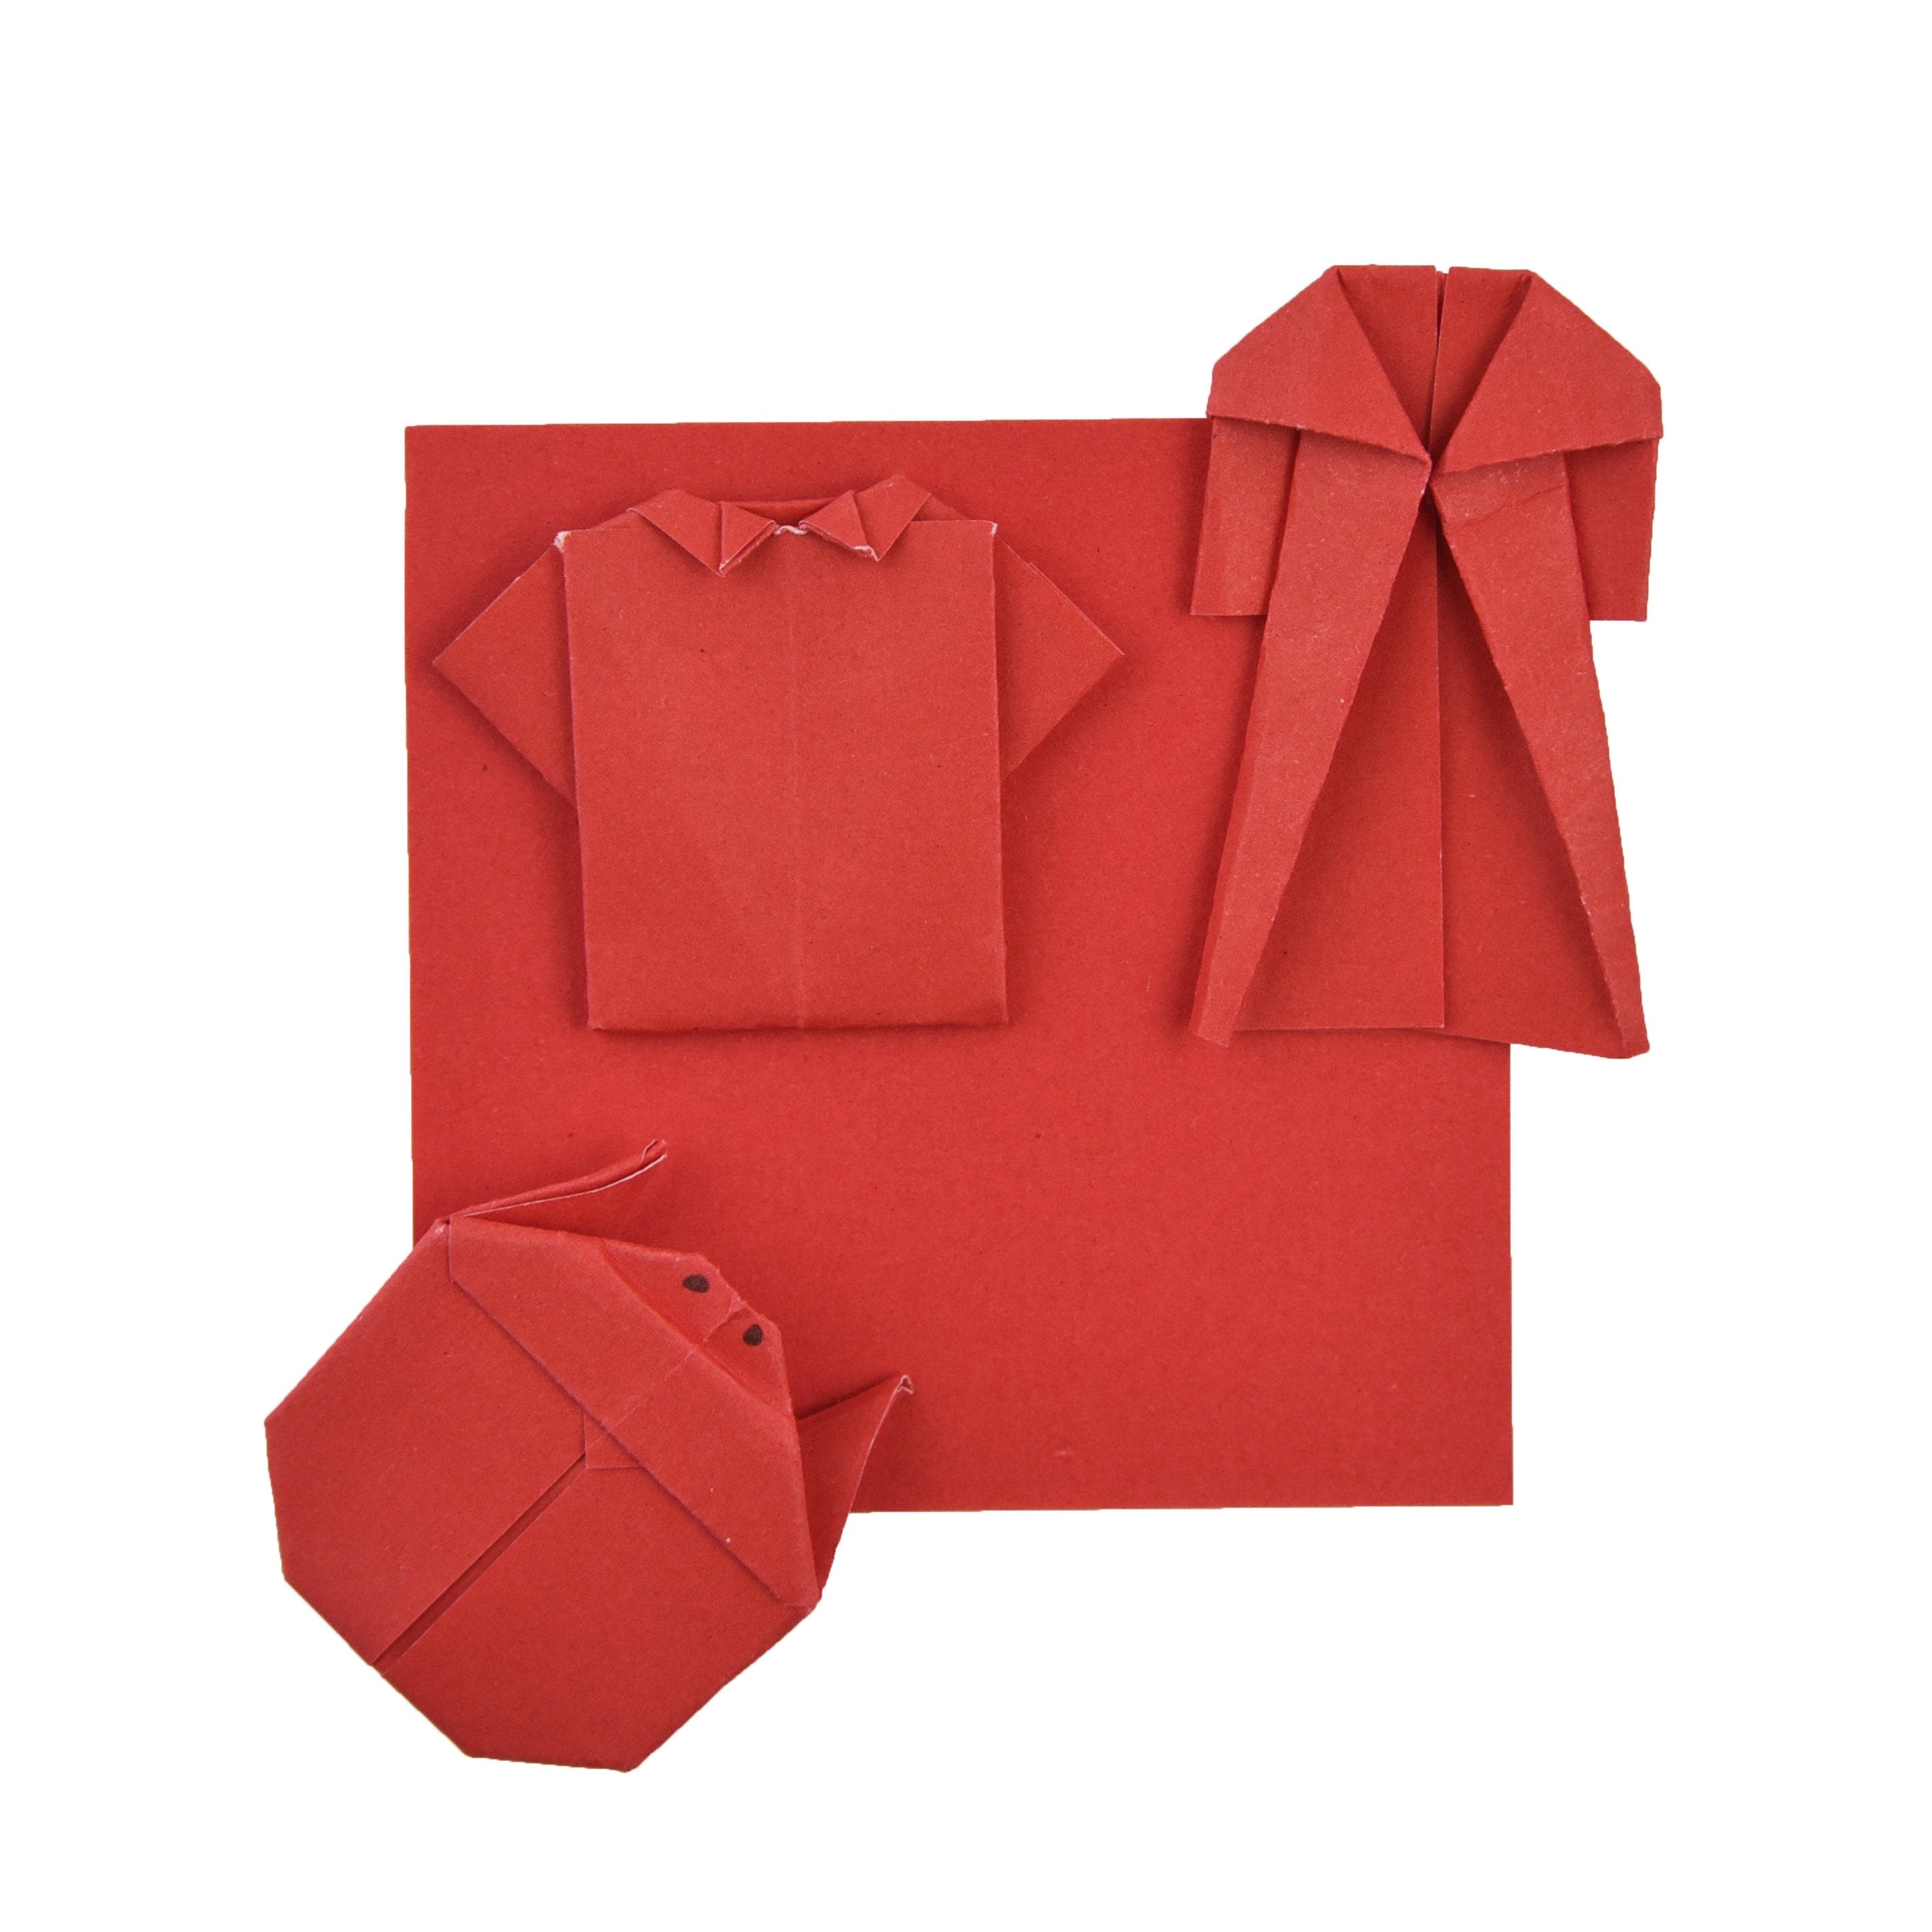 100 Hojas de Papel Origami - 3x3 pulgadas - Paquete de Papel Cuadrado para Plegar, Grullas de Origami y Decoración - S05